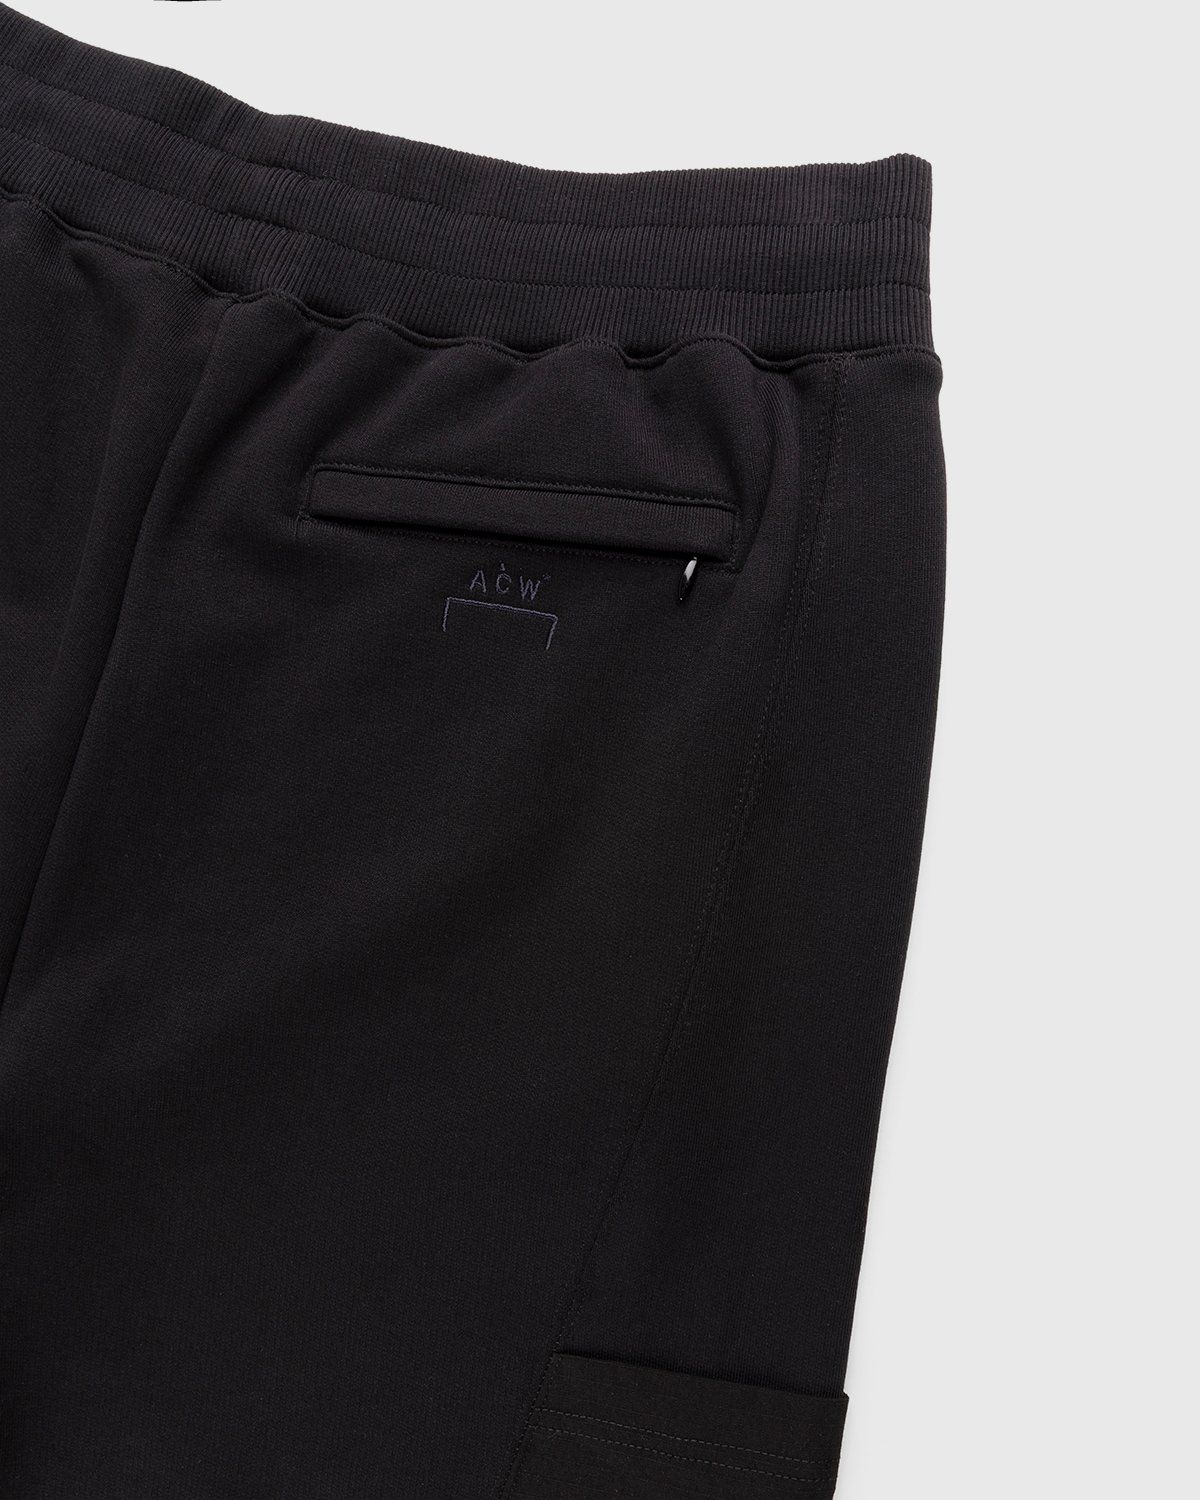 A-Cold-Wall* – Vault Shorts Black - Shorts - Black - Image 3